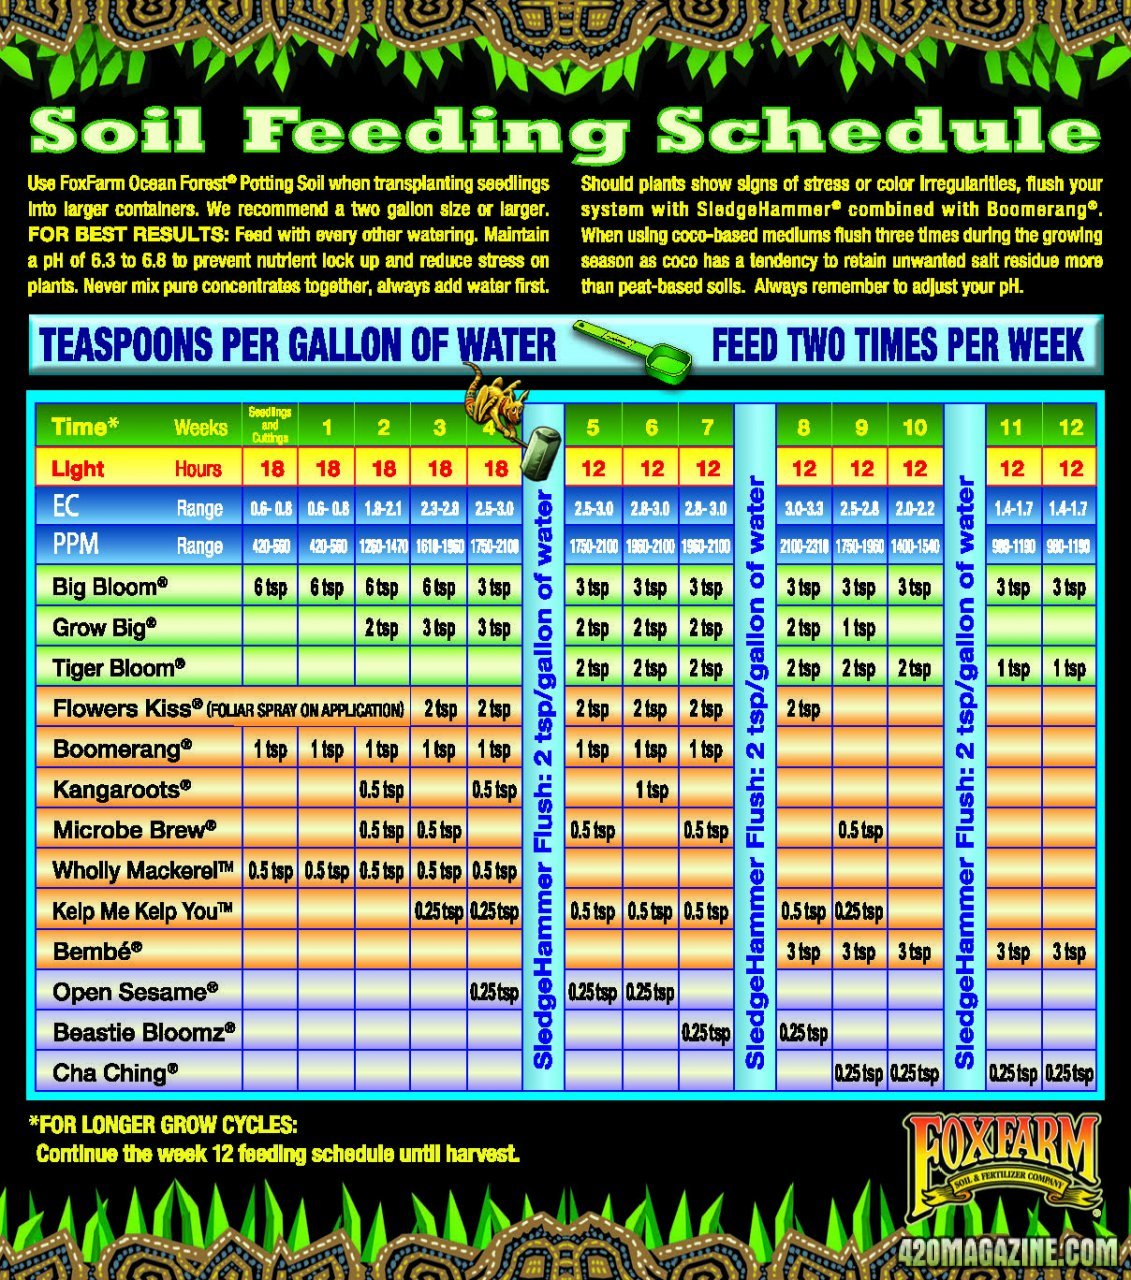 FoxFarms feeding schedule for soil - entire.jpg